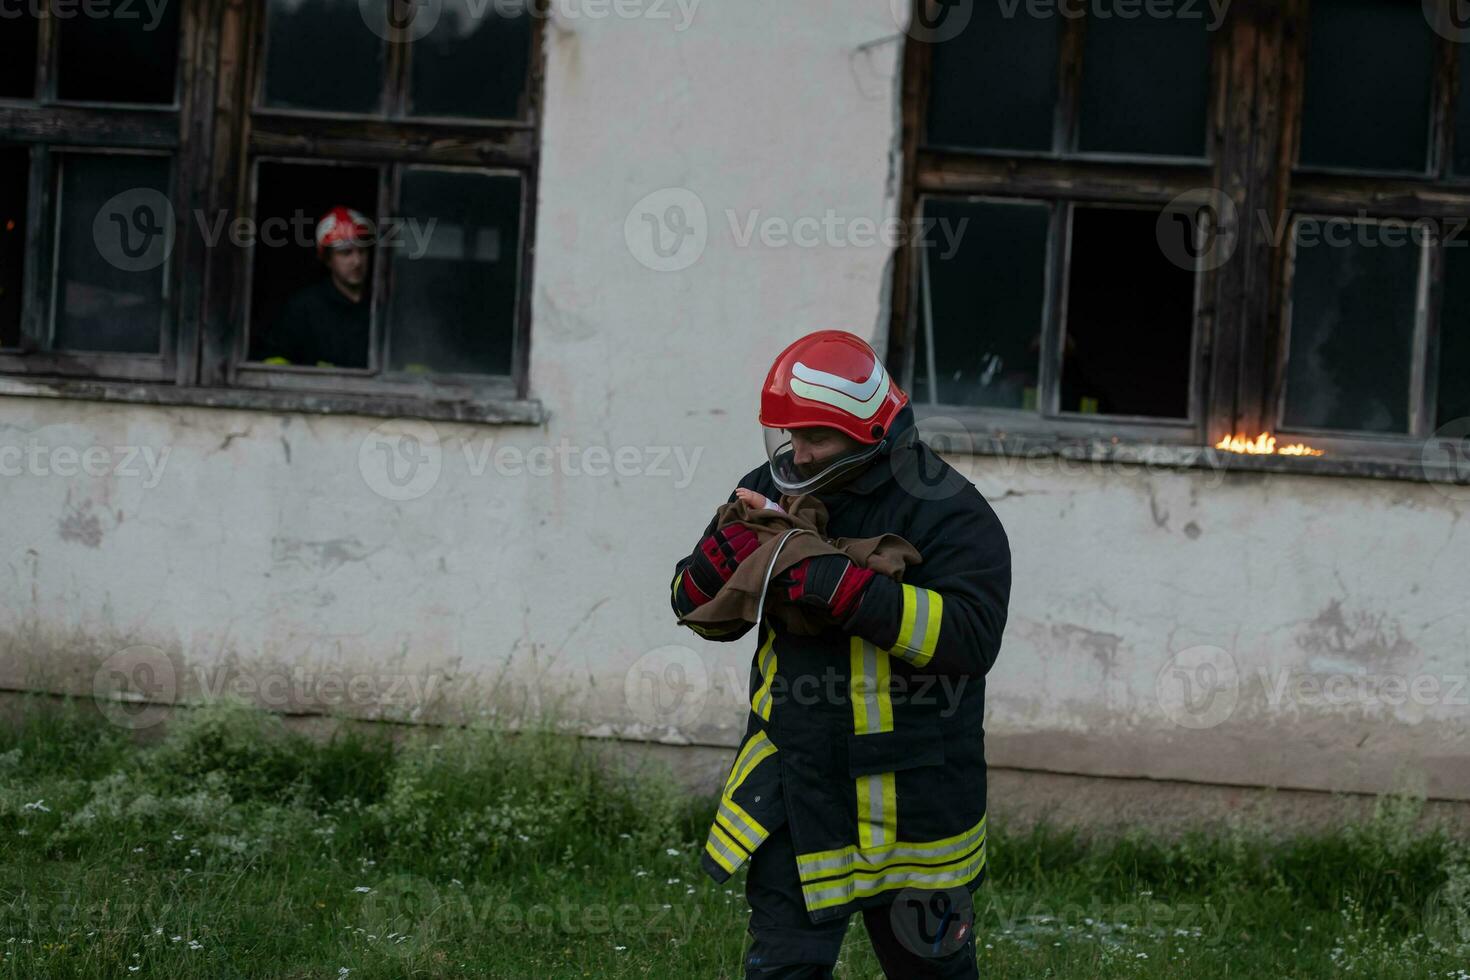 Feuerwehrmann Held Tragen Baby Mädchen aus von Verbrennung Gebäude Bereich von Feuer Vorfall. Rettung Menschen von gefährlich Platz foto